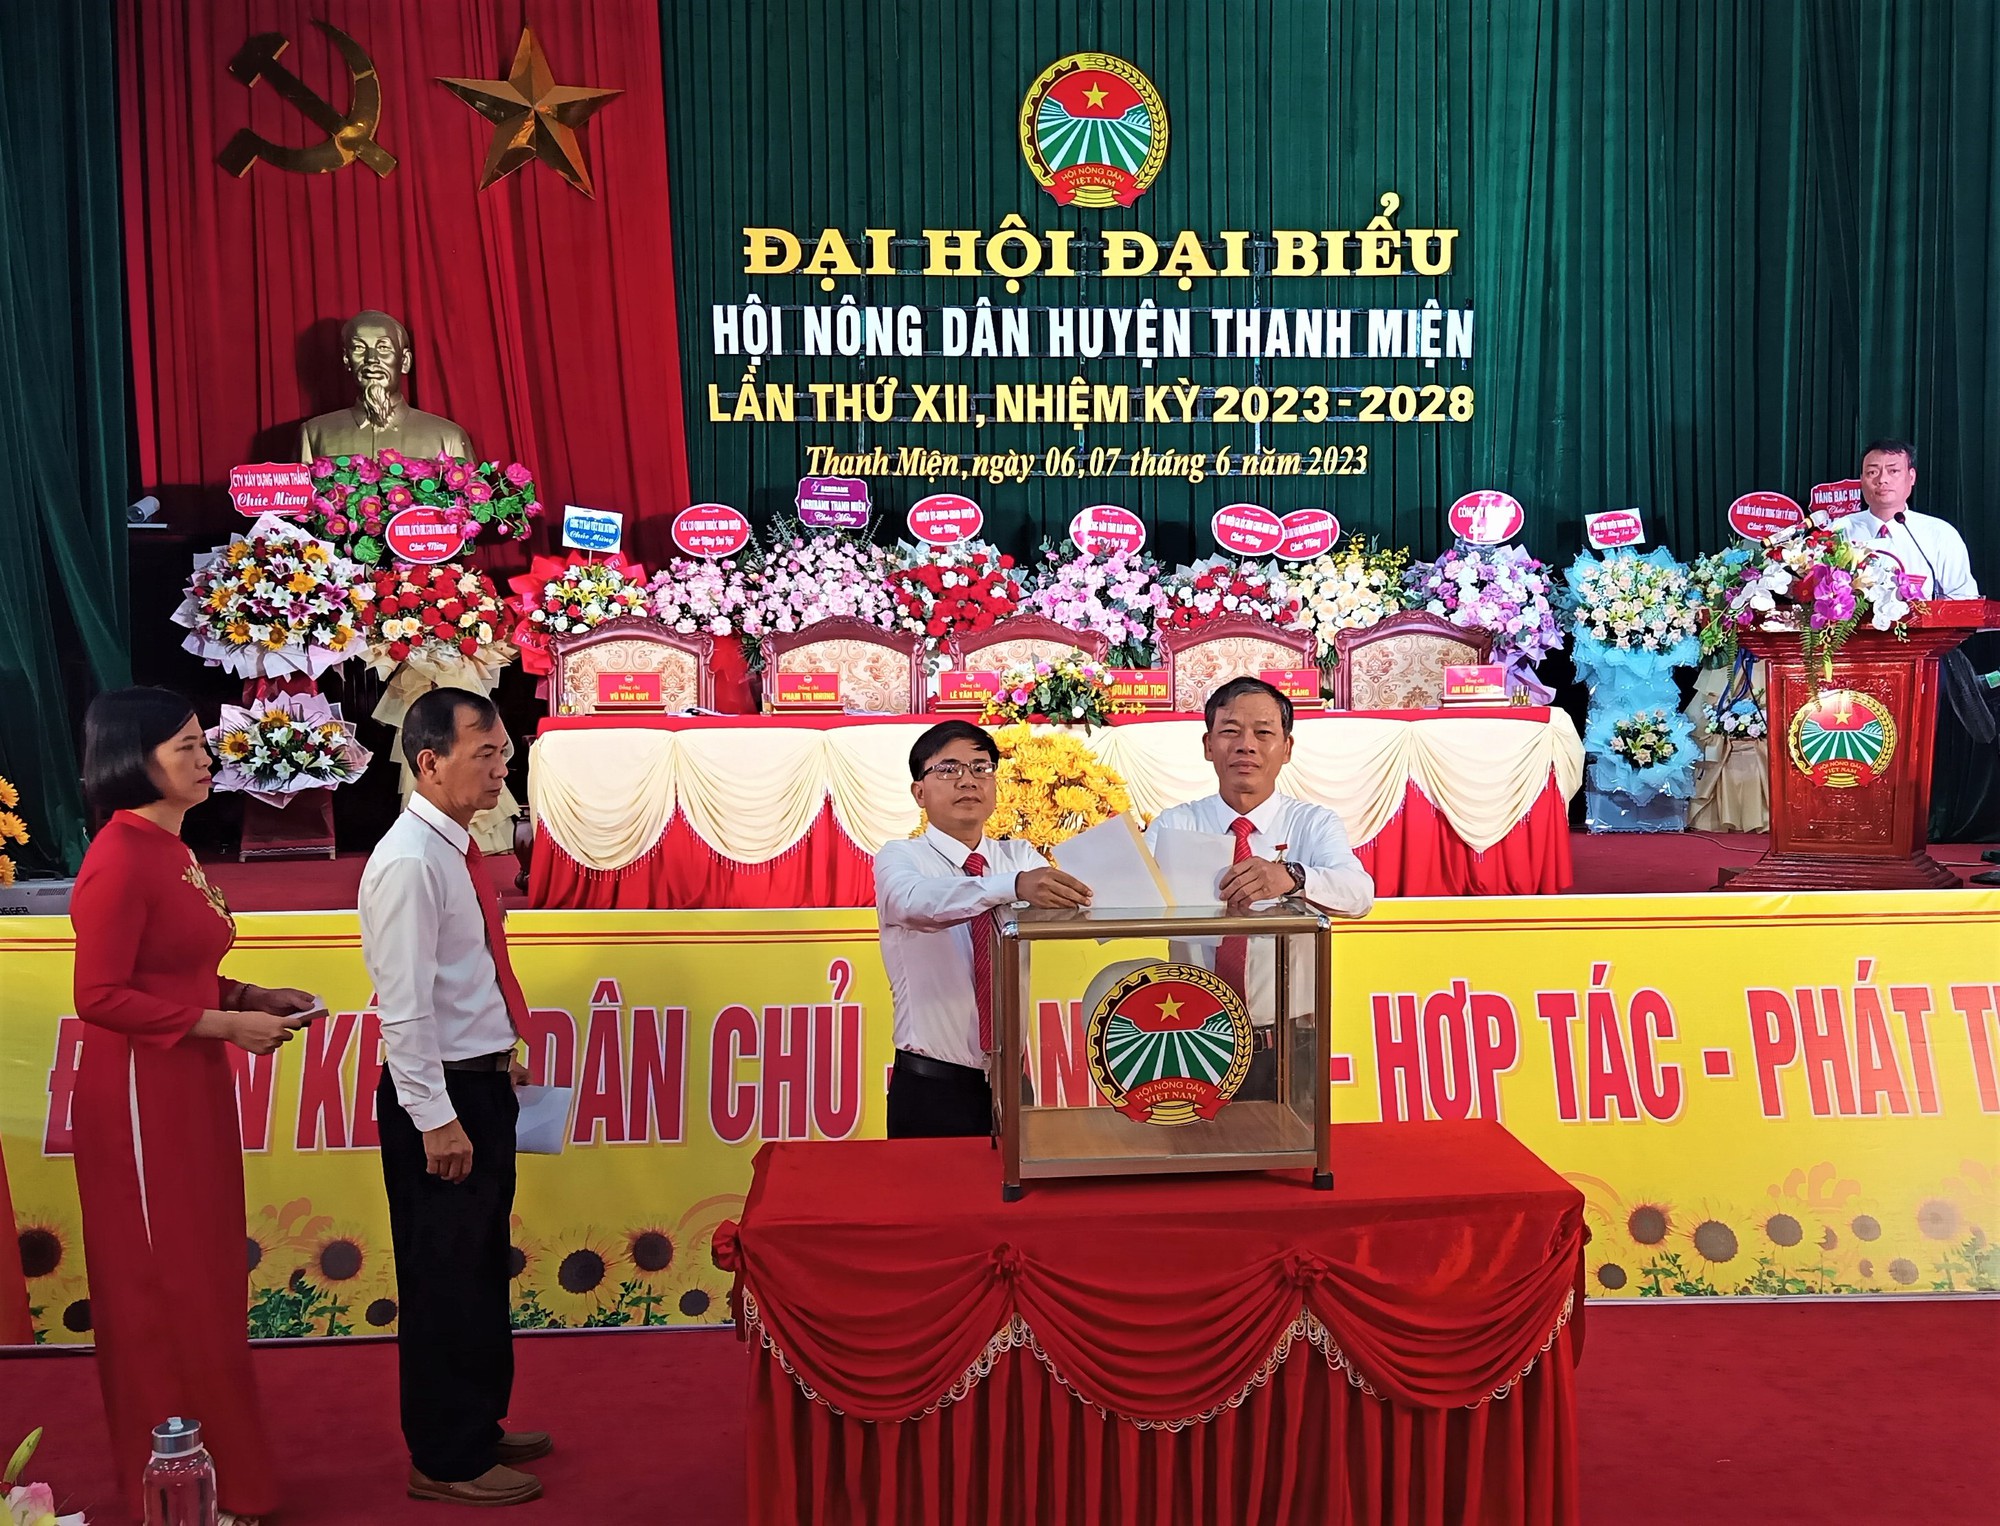 Chủ tịch Hội Nông dân huyện đầu tiên của tỉnh Hải Dương không phải tái đắc cử - Ảnh 1.